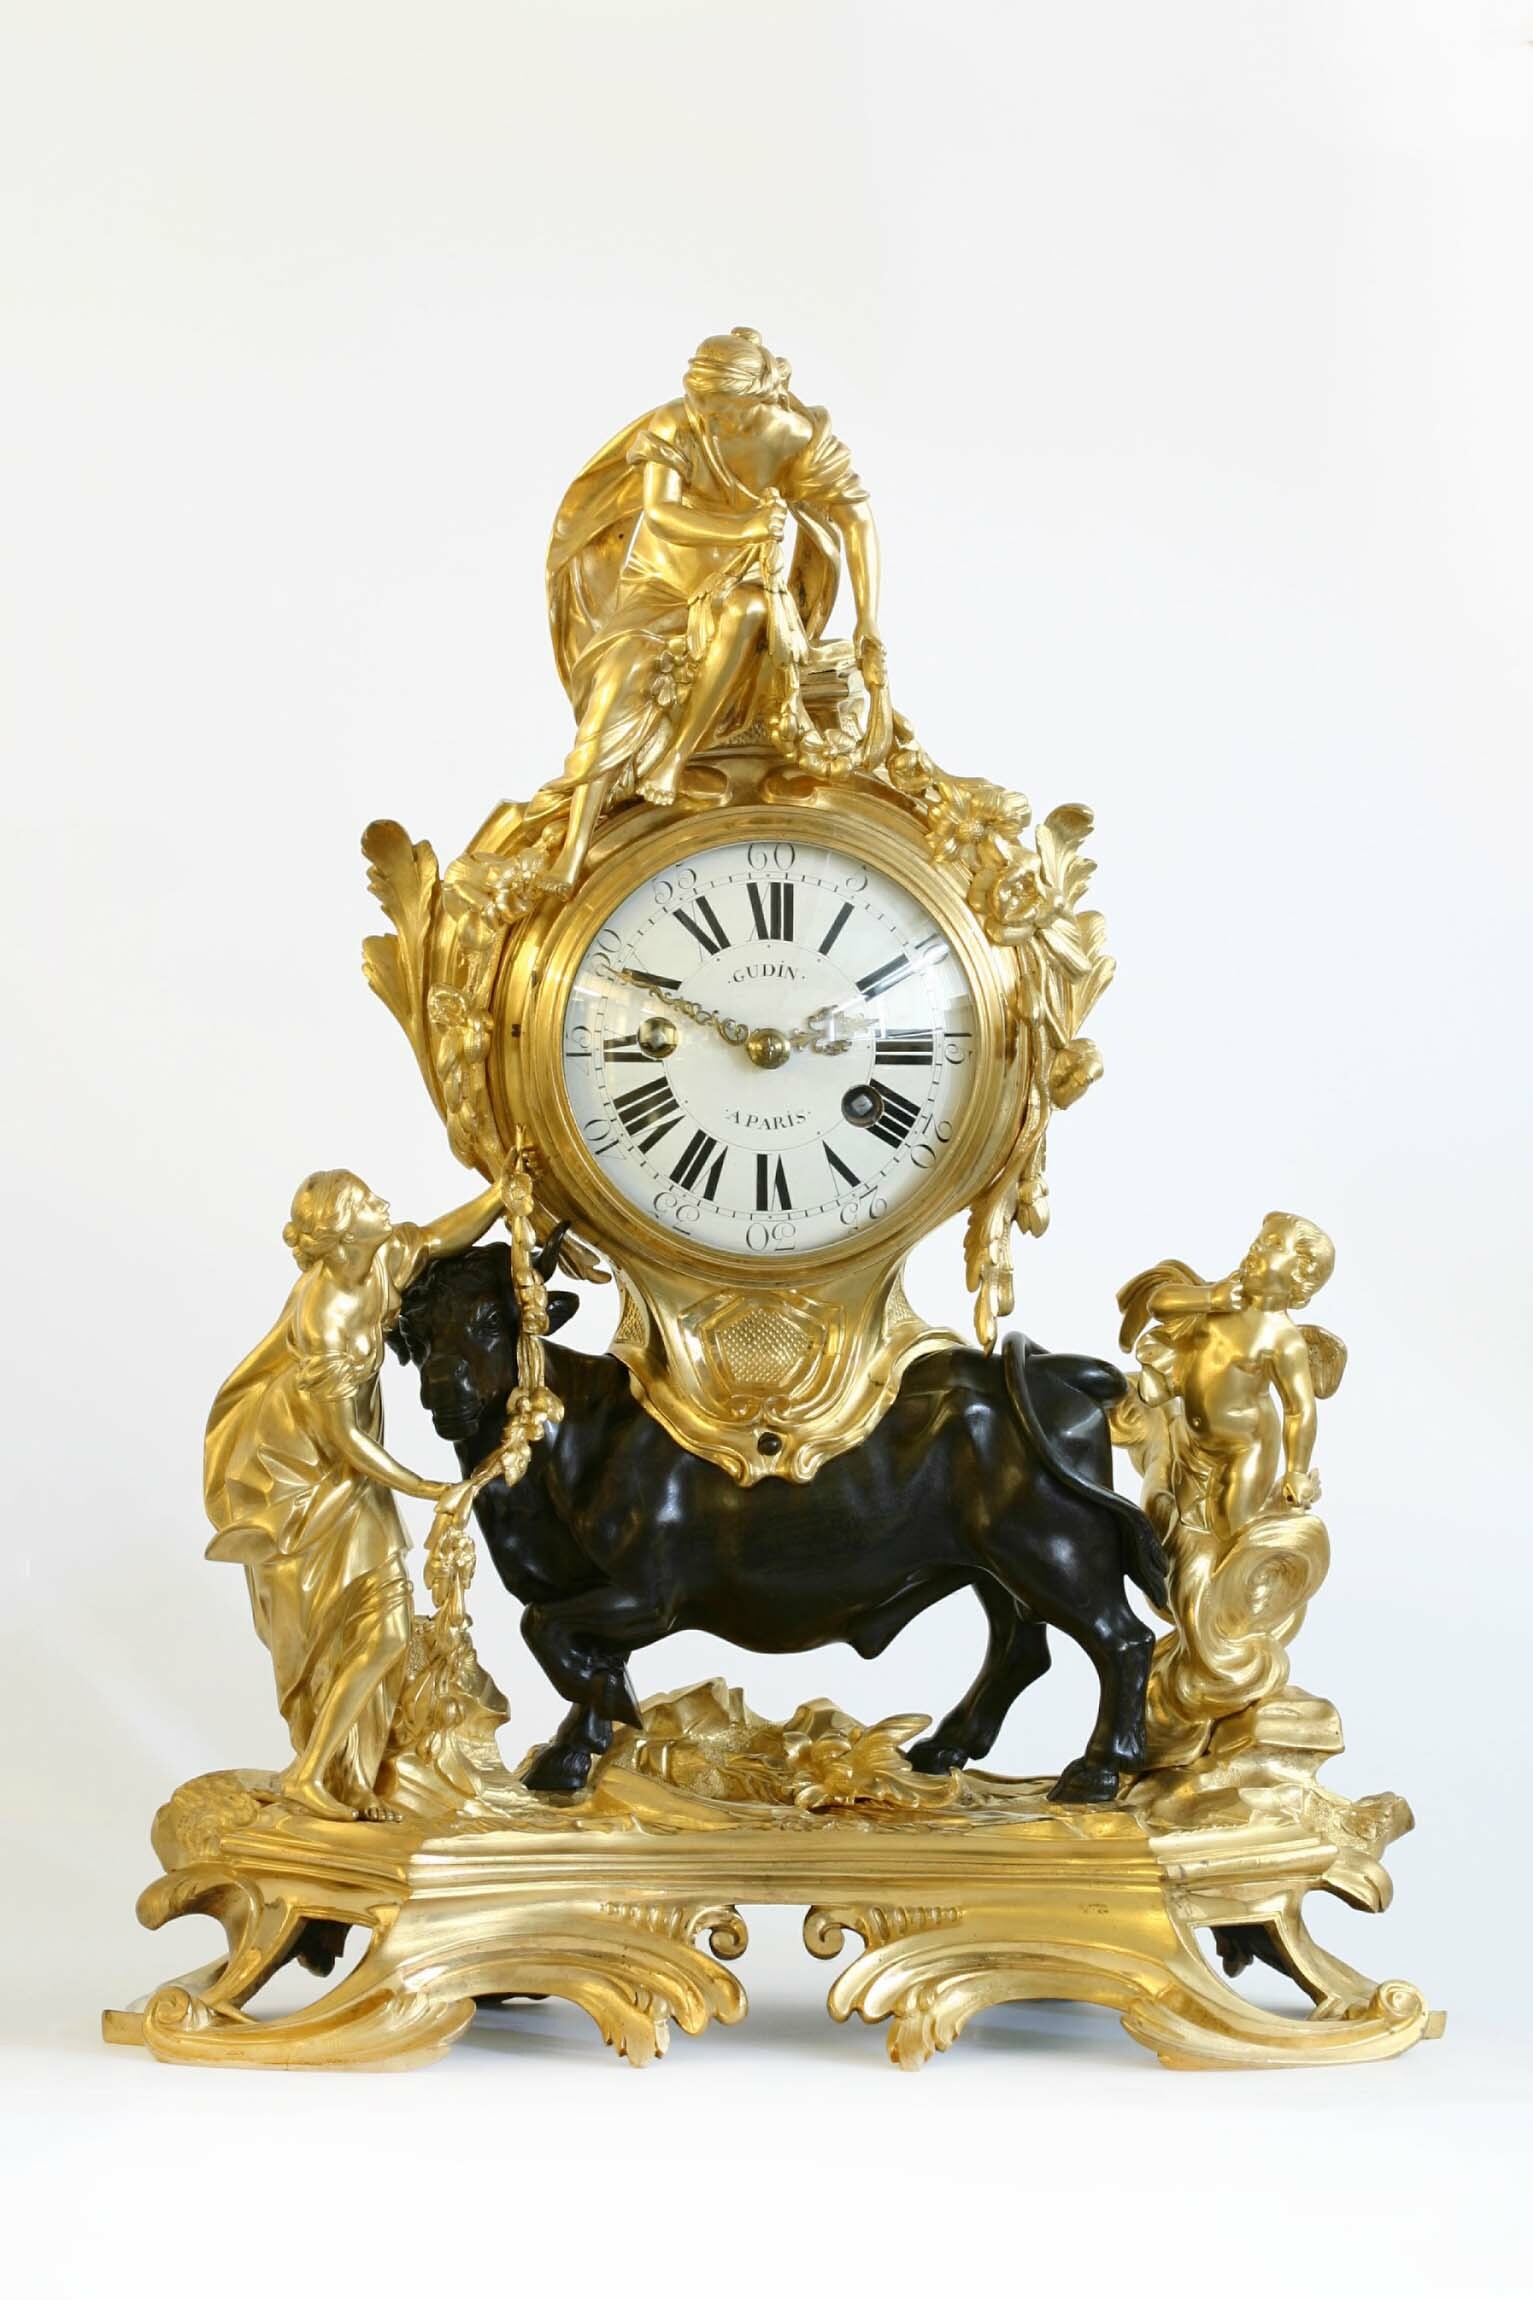 Tischuhr, Pendule au taureau, Gudin, Paris, um 1750 (Deutsches Uhrenmuseum CC BY-SA)